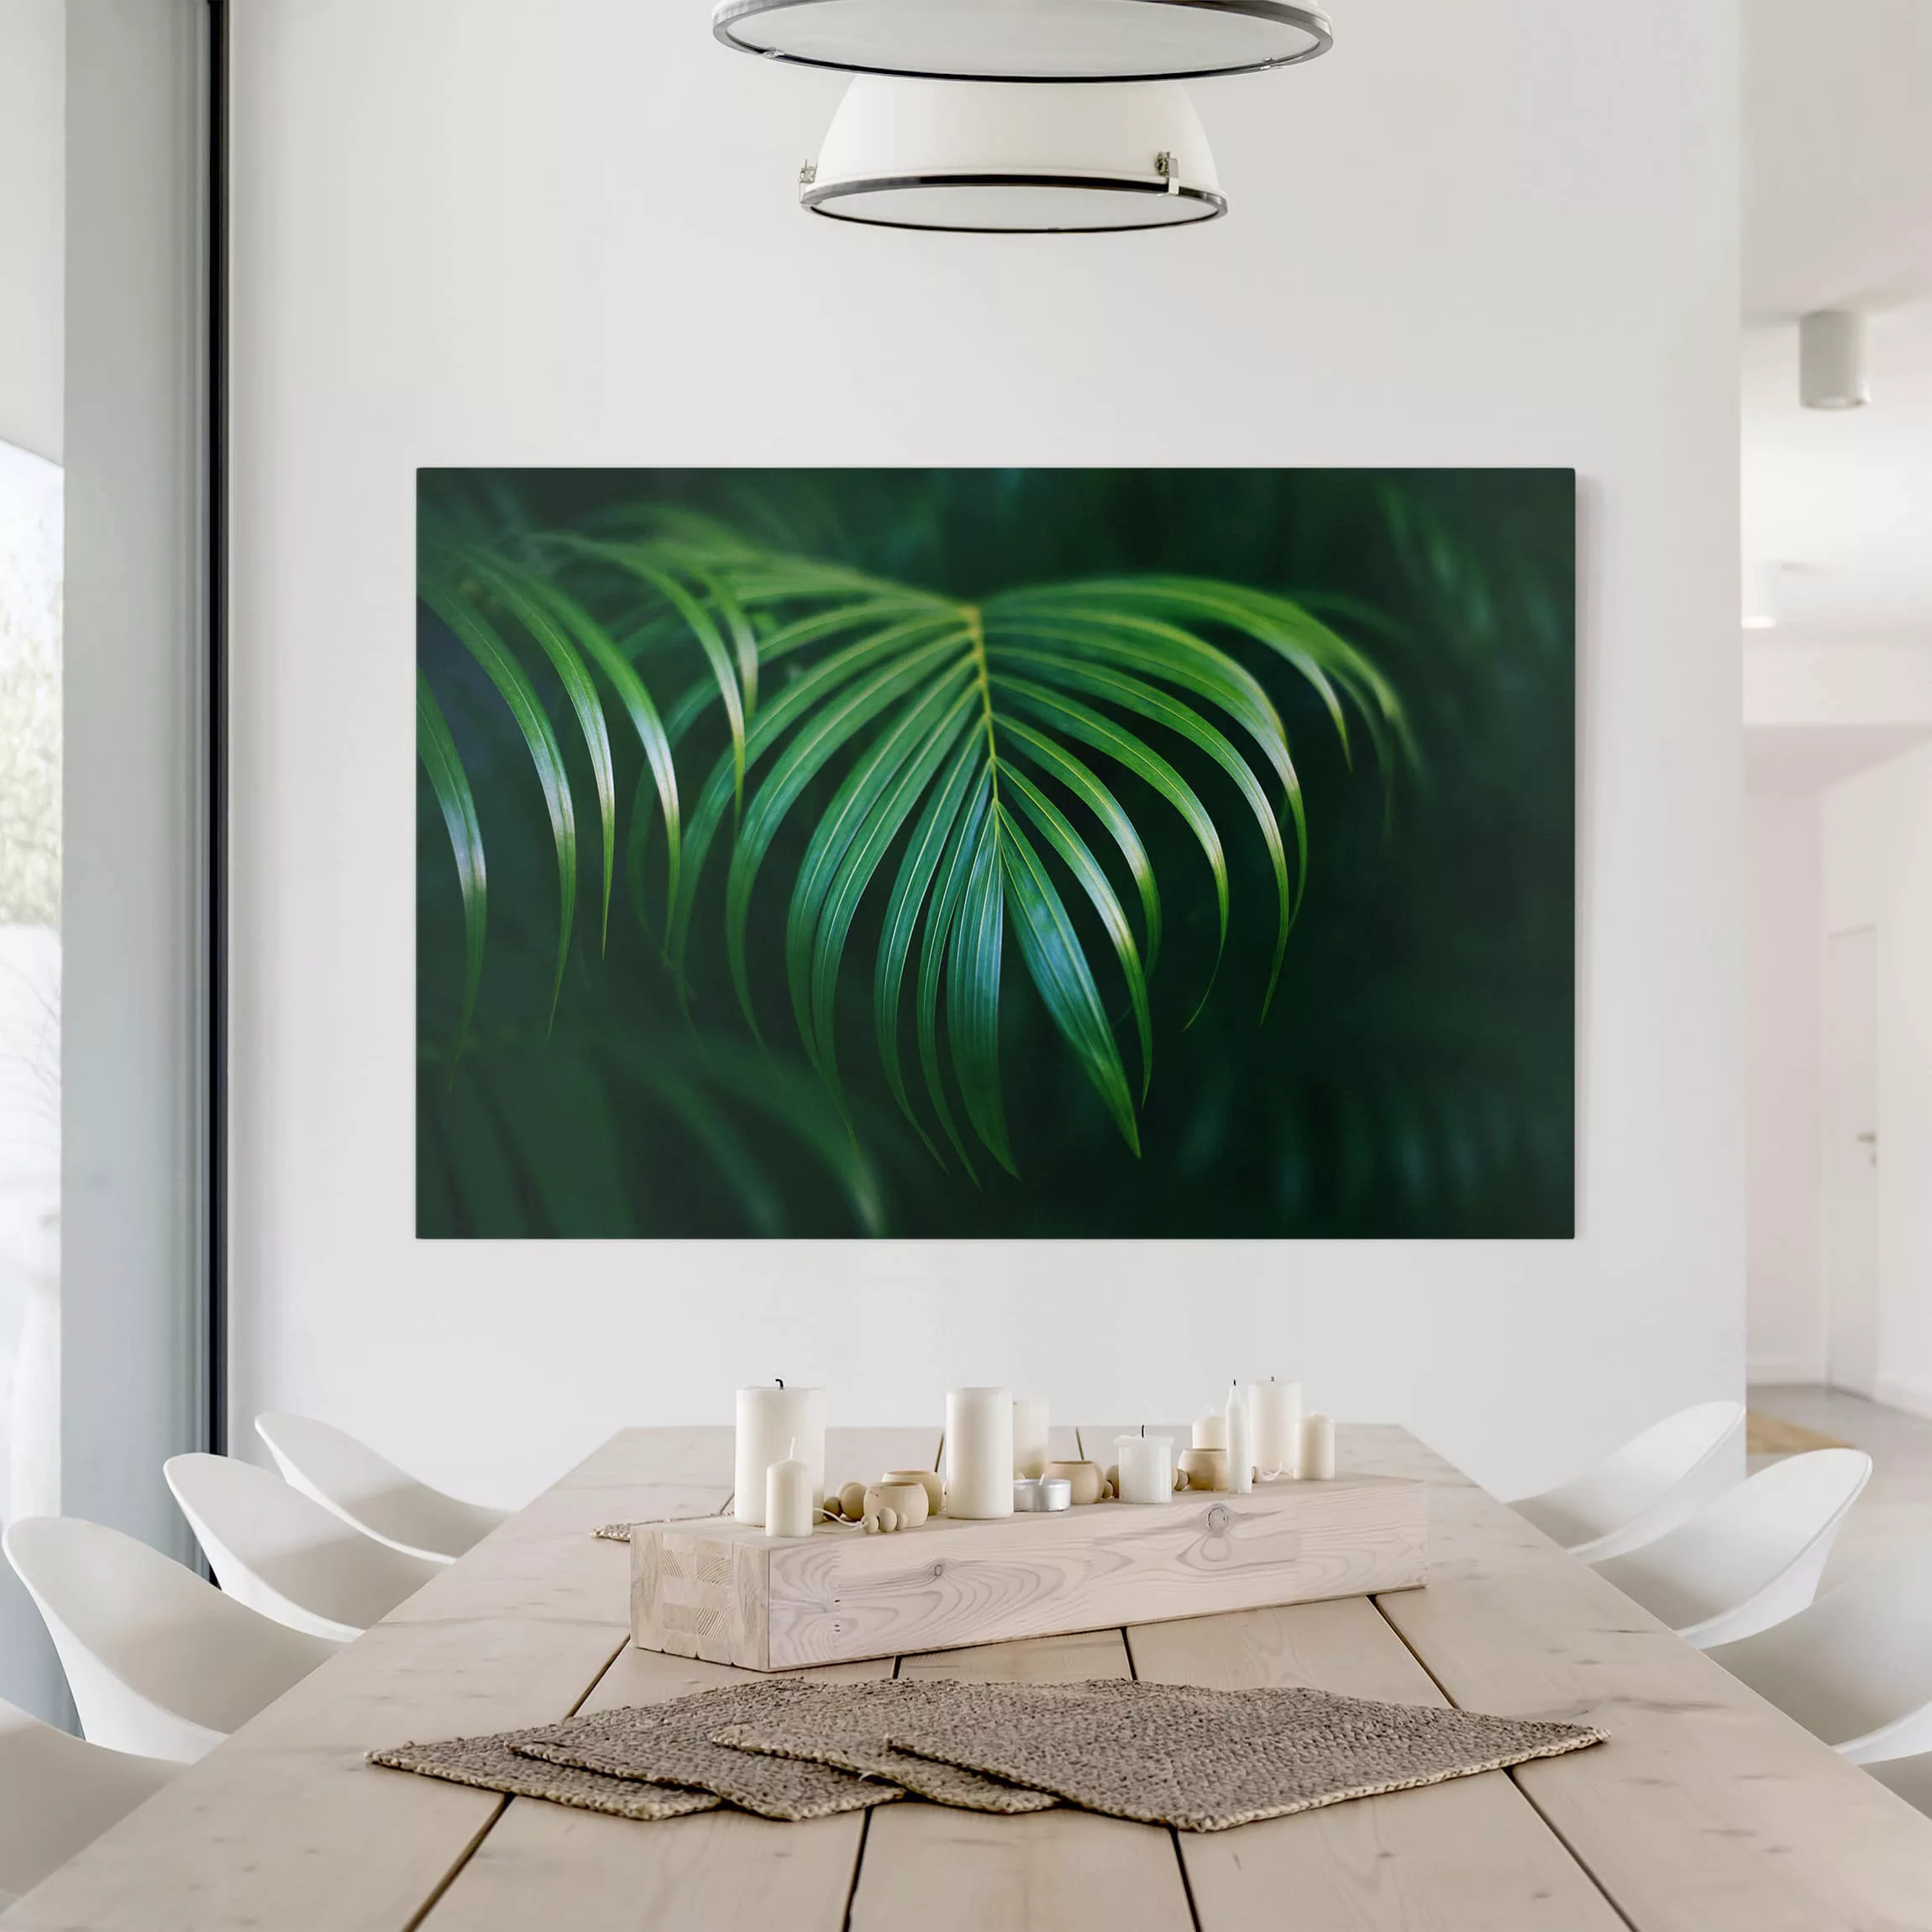 Leinwandbild Botanik - Querformat Palmenwedel günstig online kaufen